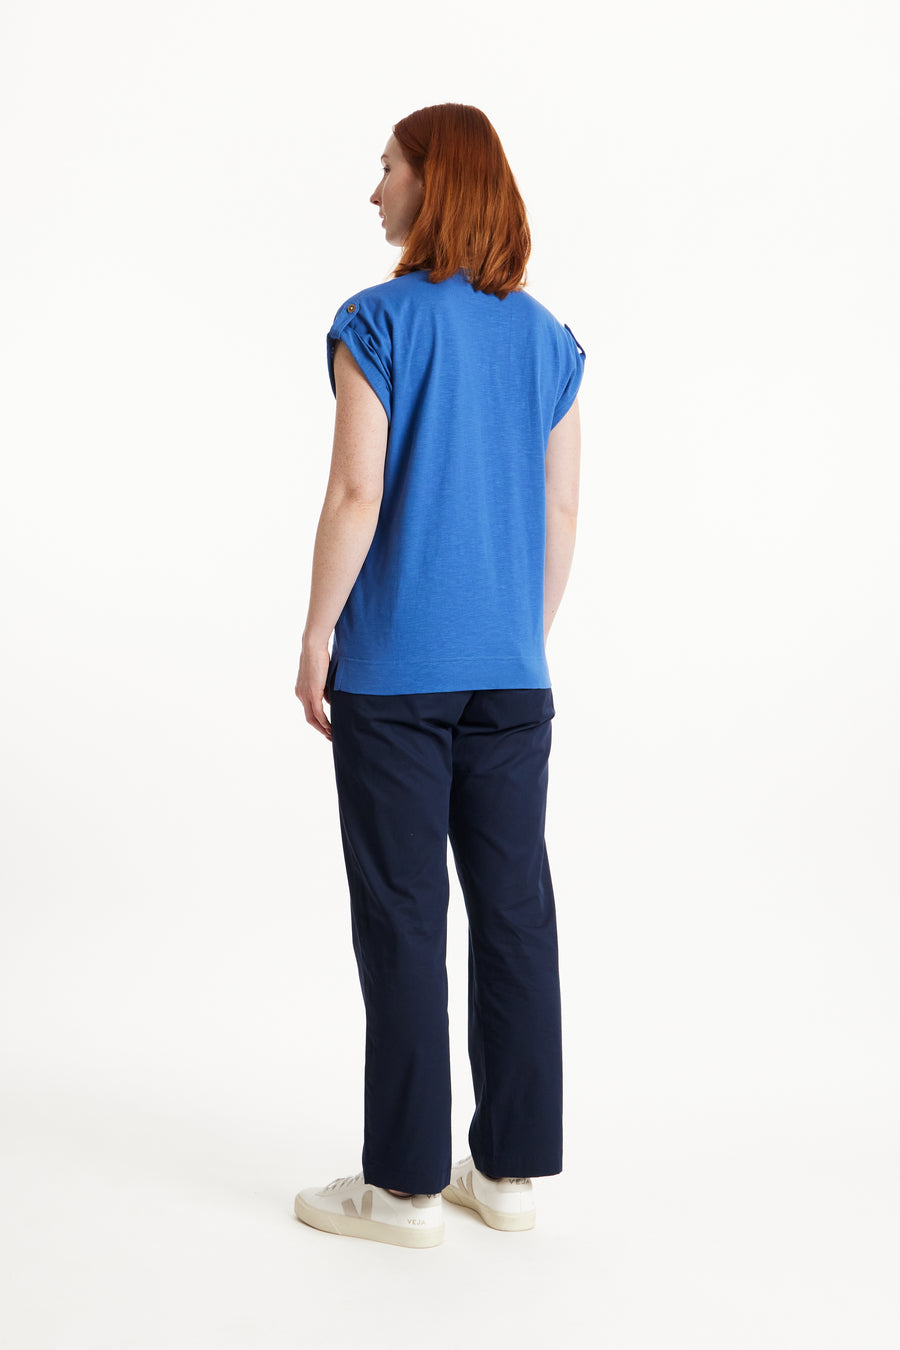 People Tree Fairer Handel, ethisches und nachhaltiges Jayne Slub -T -Shirt in blau 100% Bio -zertifizierter Baumwolle